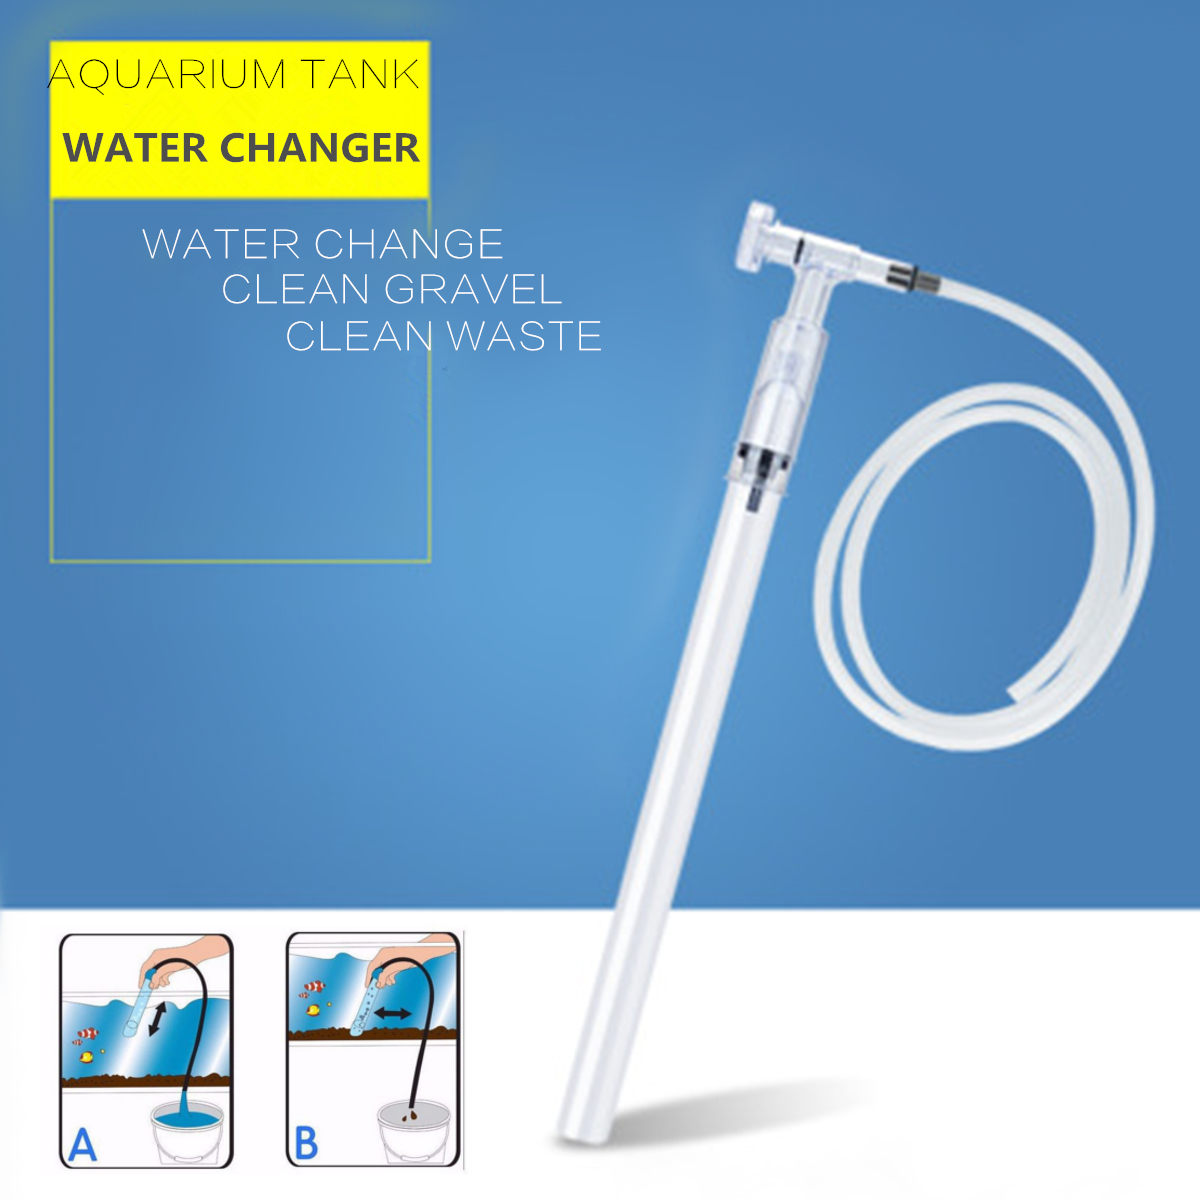 Water-Change-Siphon-Water-Pipe-Aquarium-Vacuum-Pump-Gravel-Cleaner-Fish-Tank-Filter-1307343